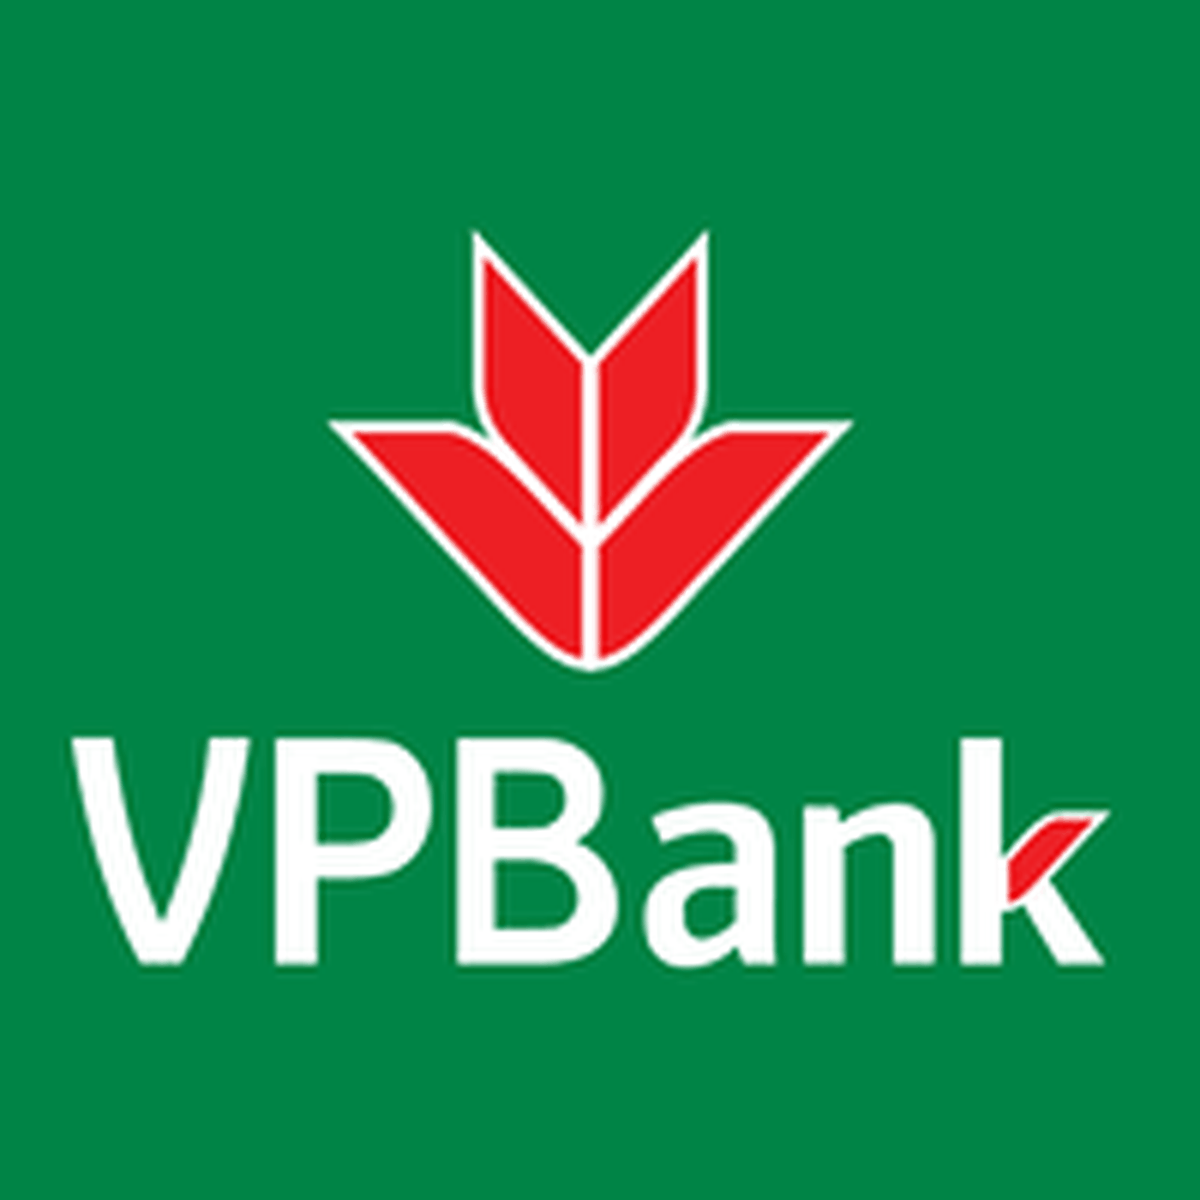 VP Bank - Mở thẻ tín dụng 100% Online và có thể nhận sau 48 giờ